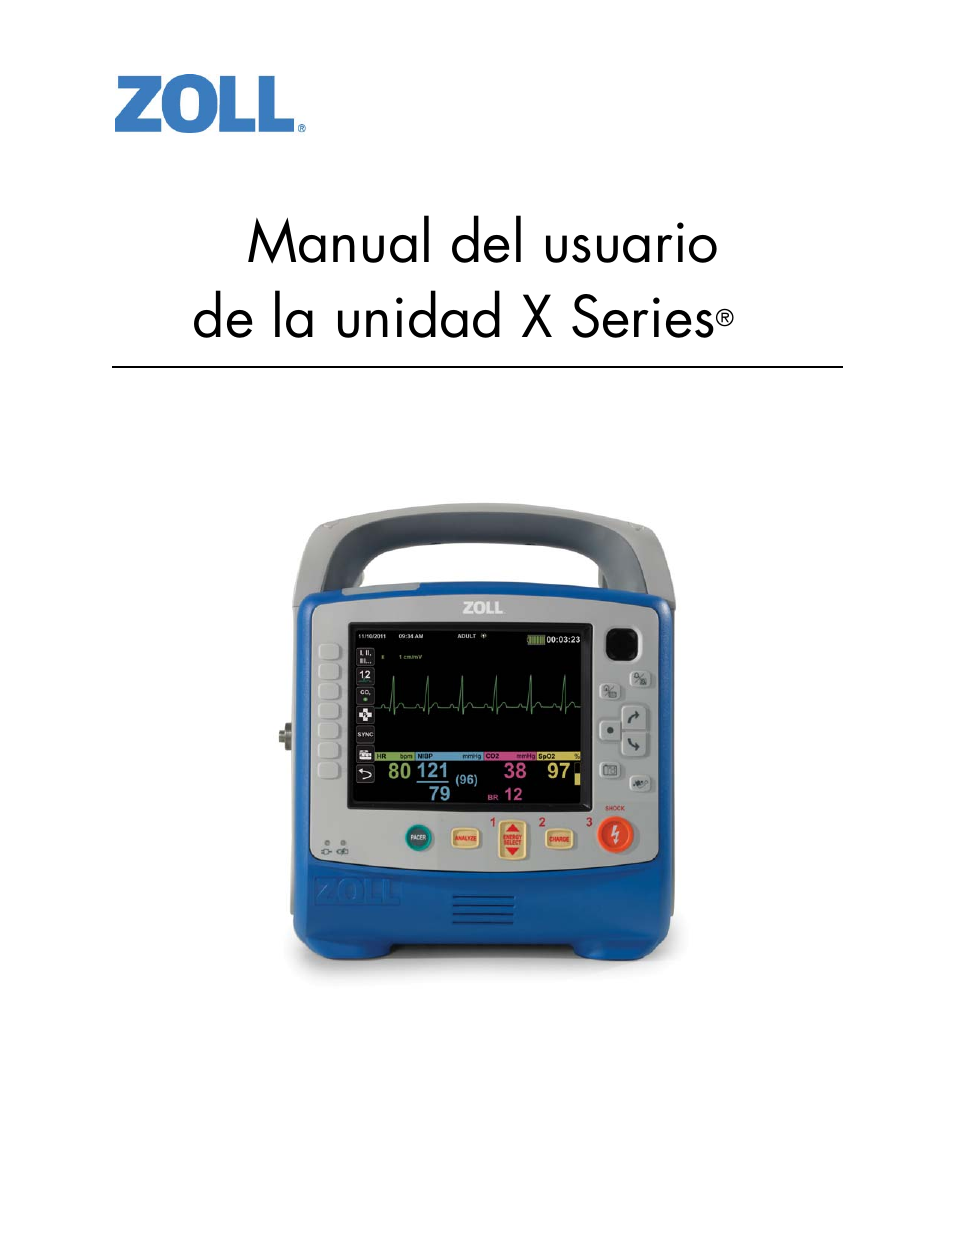 ZOLL X Series Monitor Defibrillator Rev J Manual del usuario | Páginas: 326